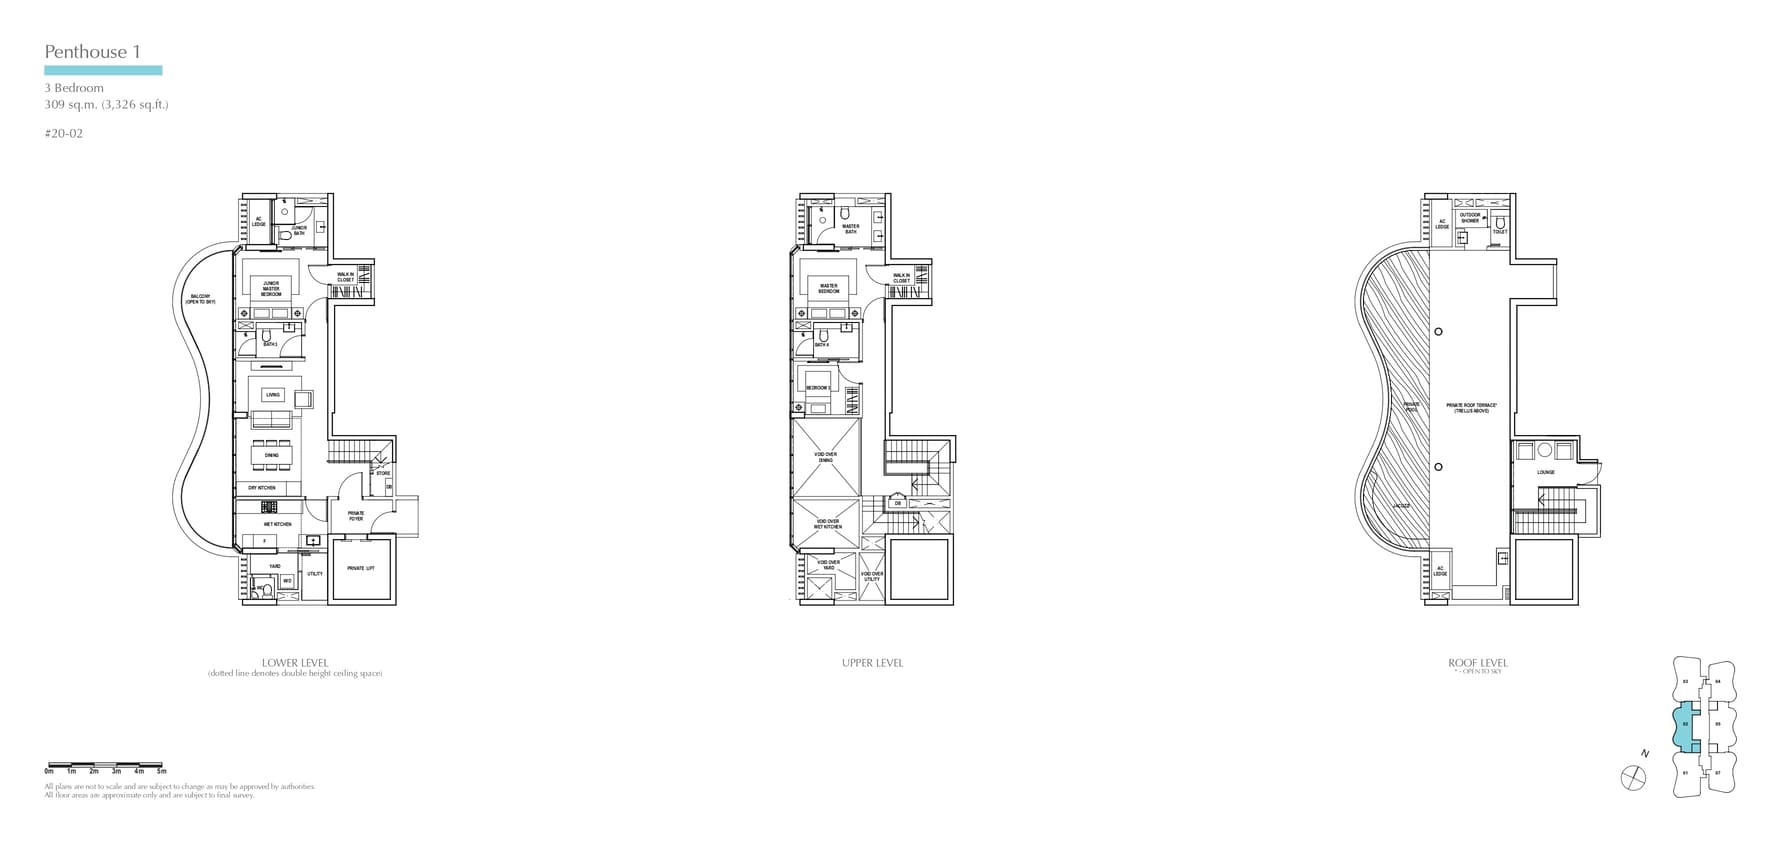 fp-amber-skye-penthouse-1-floor-plan.jpg